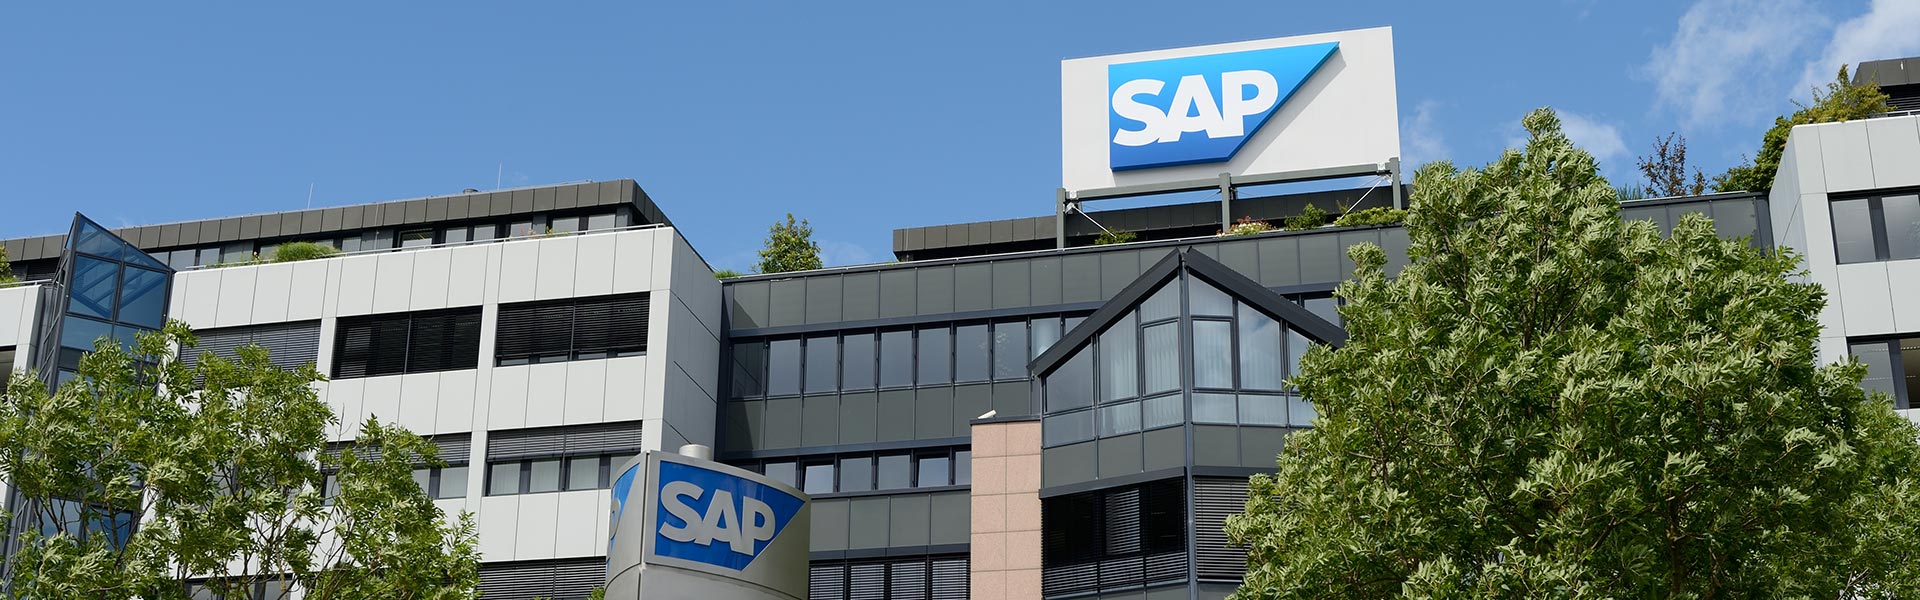 SAP annuncia una soluzione cloud per rilevare e gestire le presenze che semplifica i processi HR e migliora l’esperienza dei dipendenti